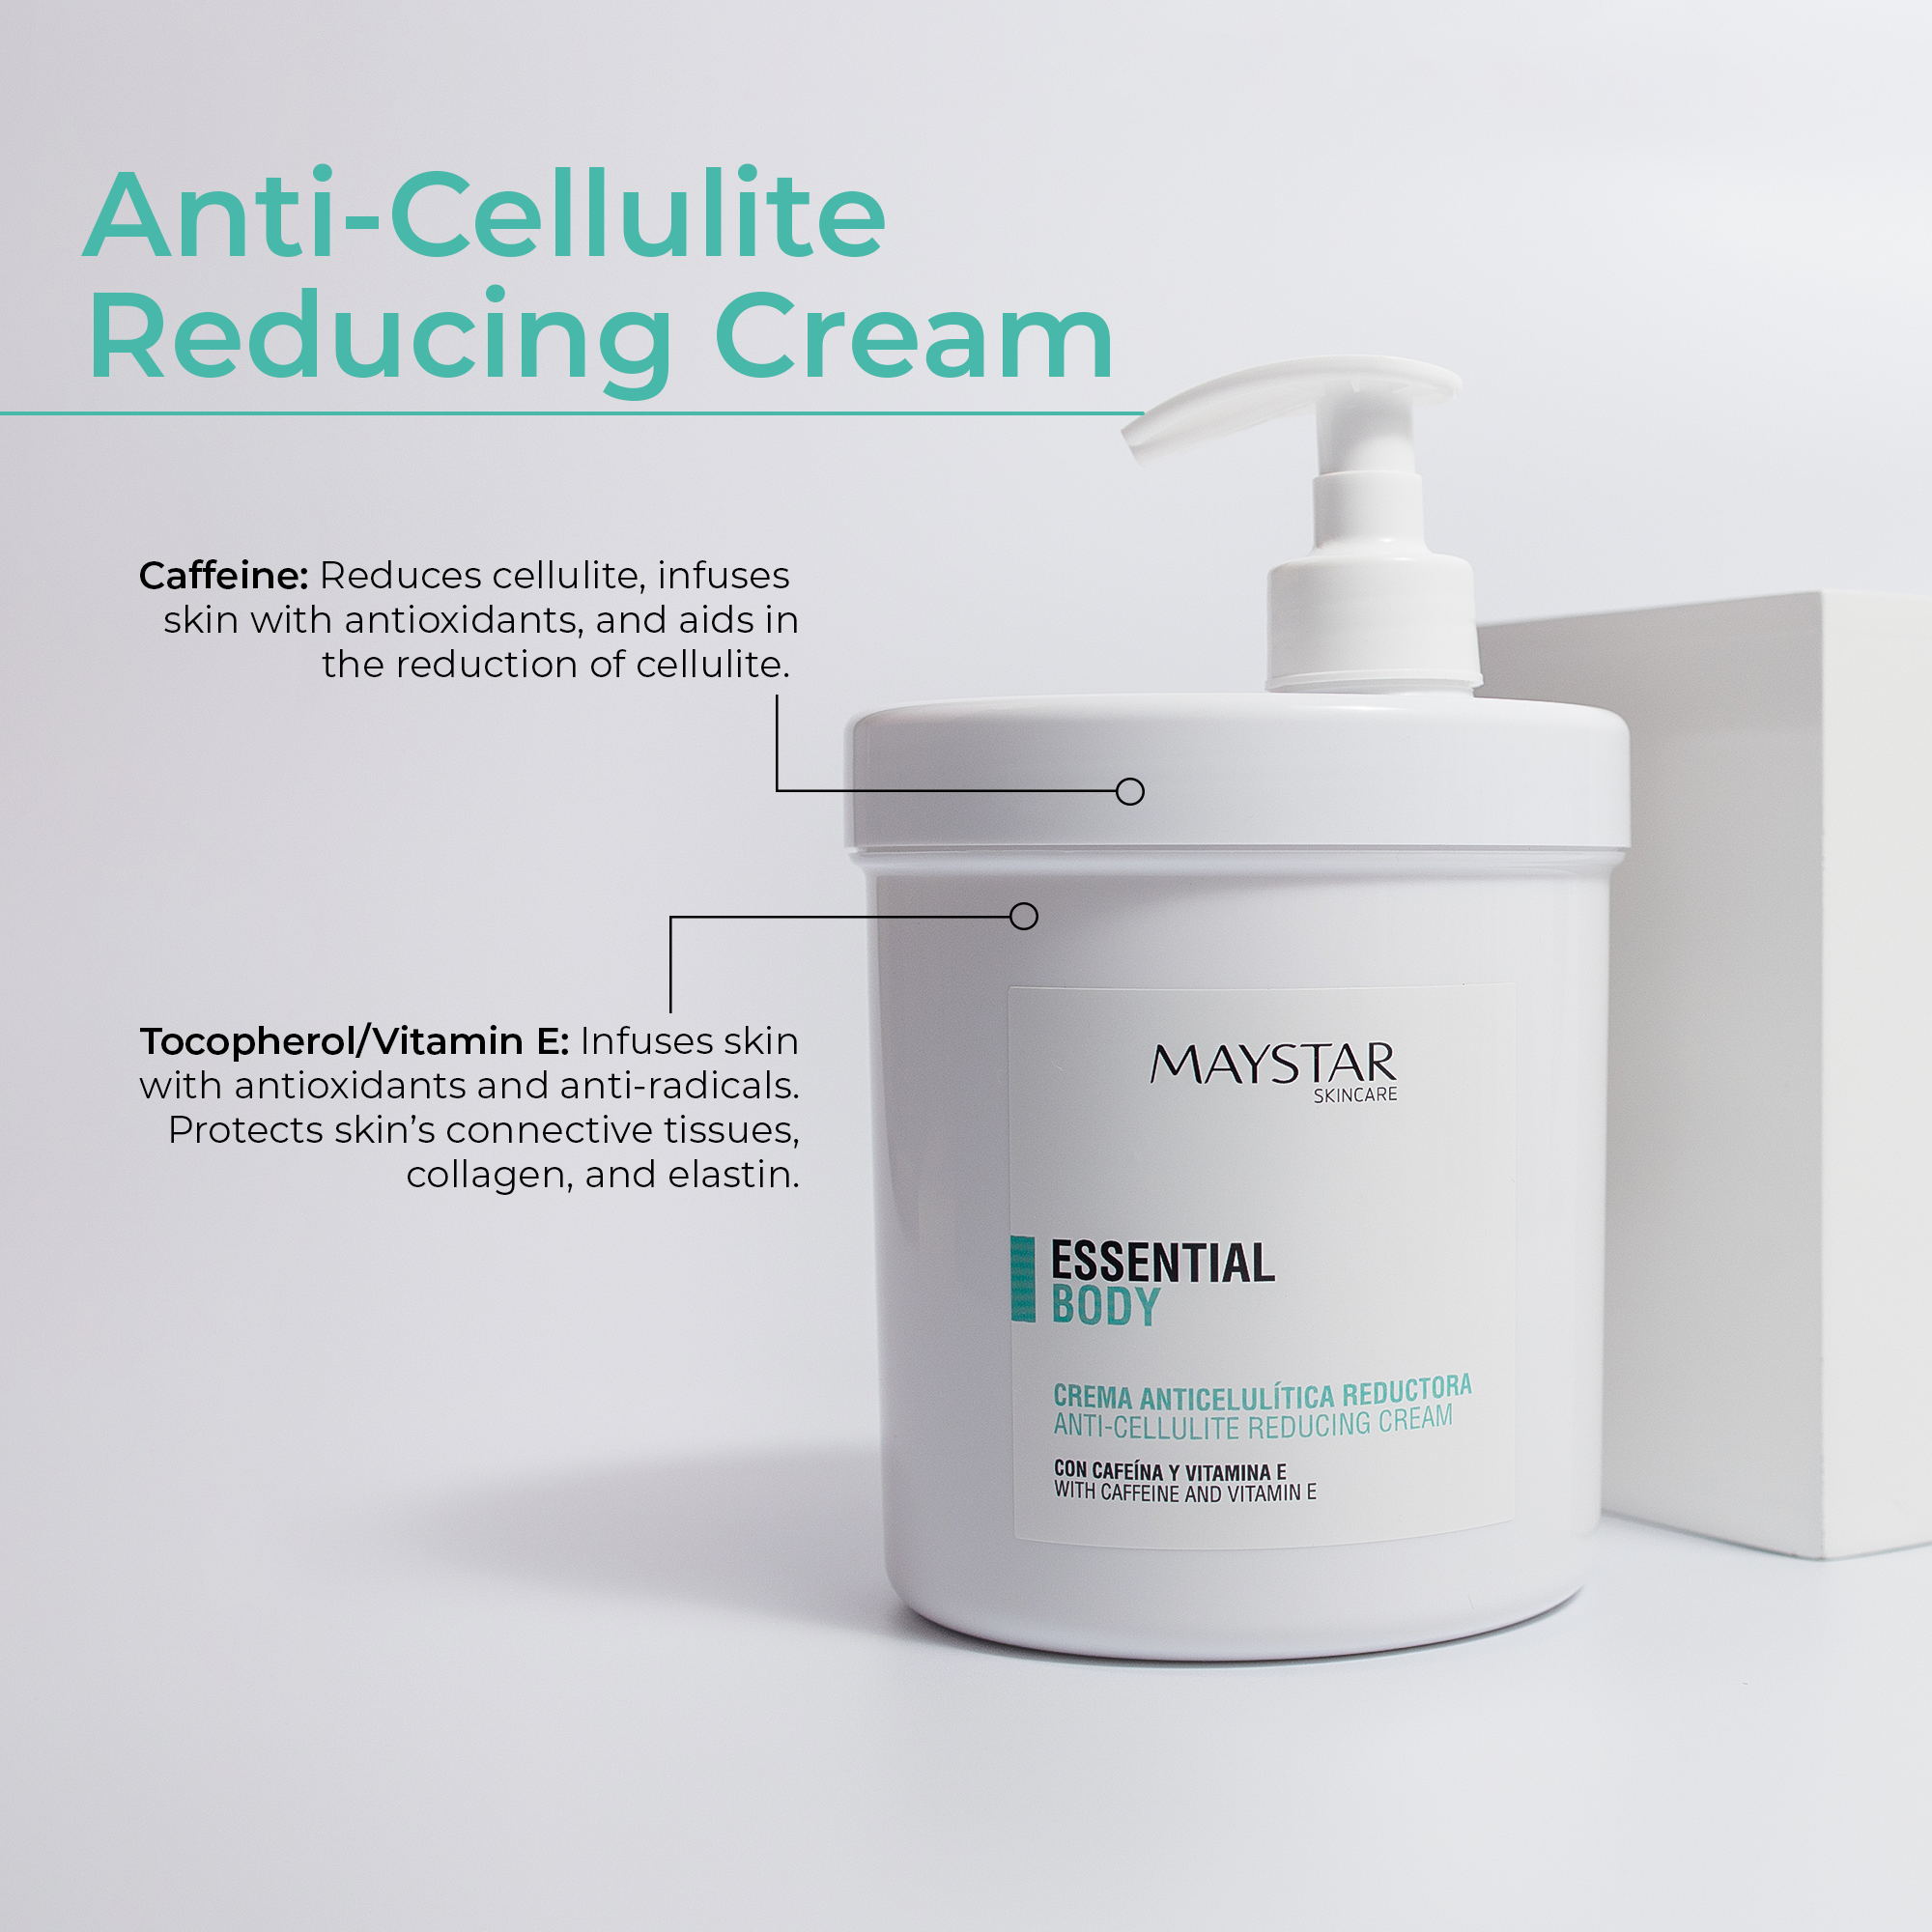 Crema Reductora de Celulitis (1000mL) - Maystar Essential